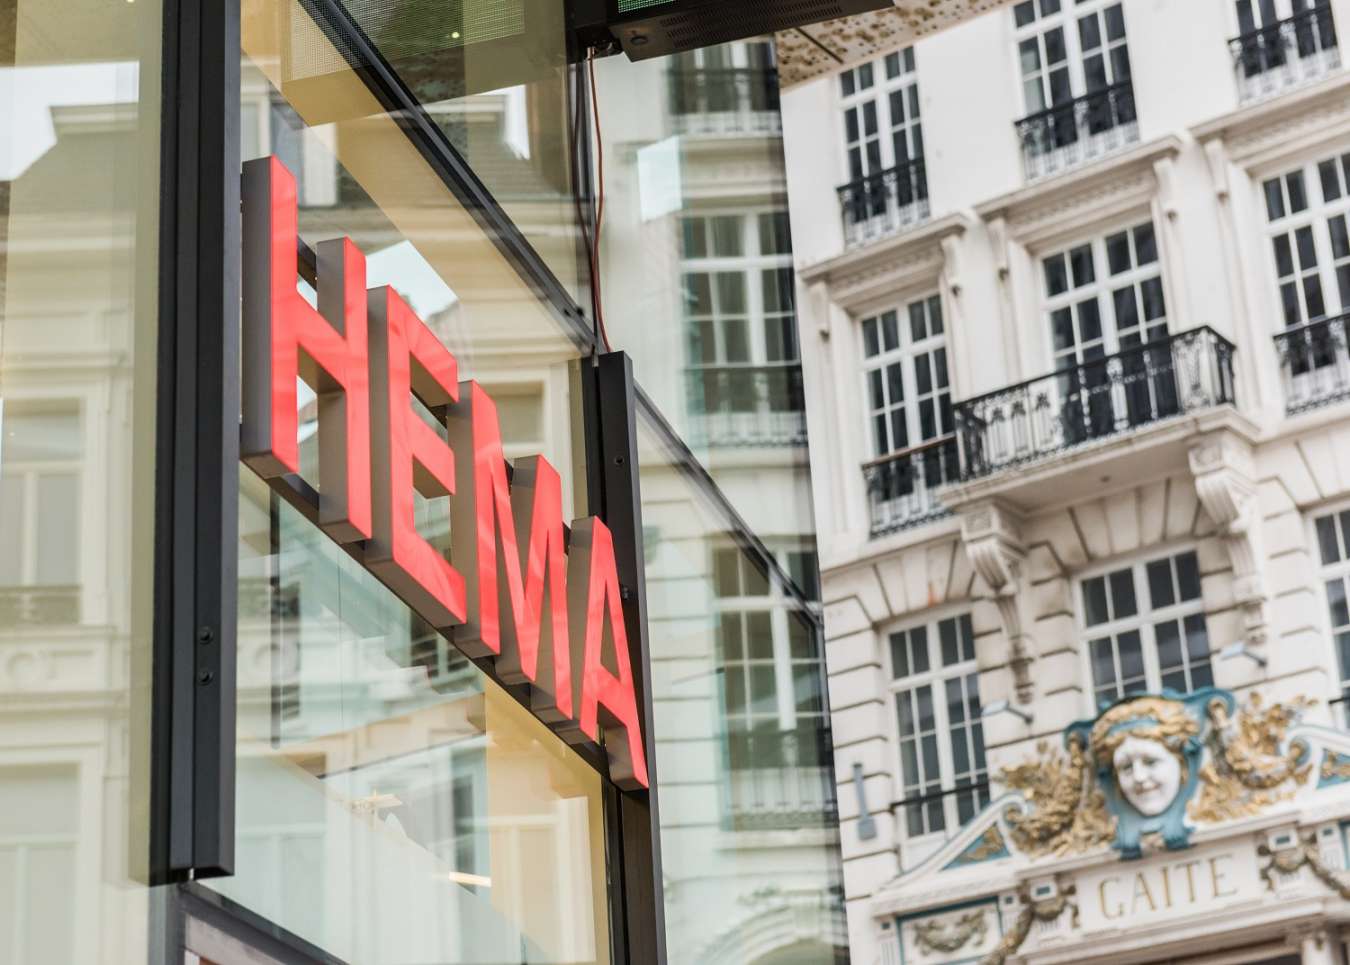 bijnaam genie plotseling Hema opent eerste Belgische flagshipstores met internationale formule -  RetailDetail BE